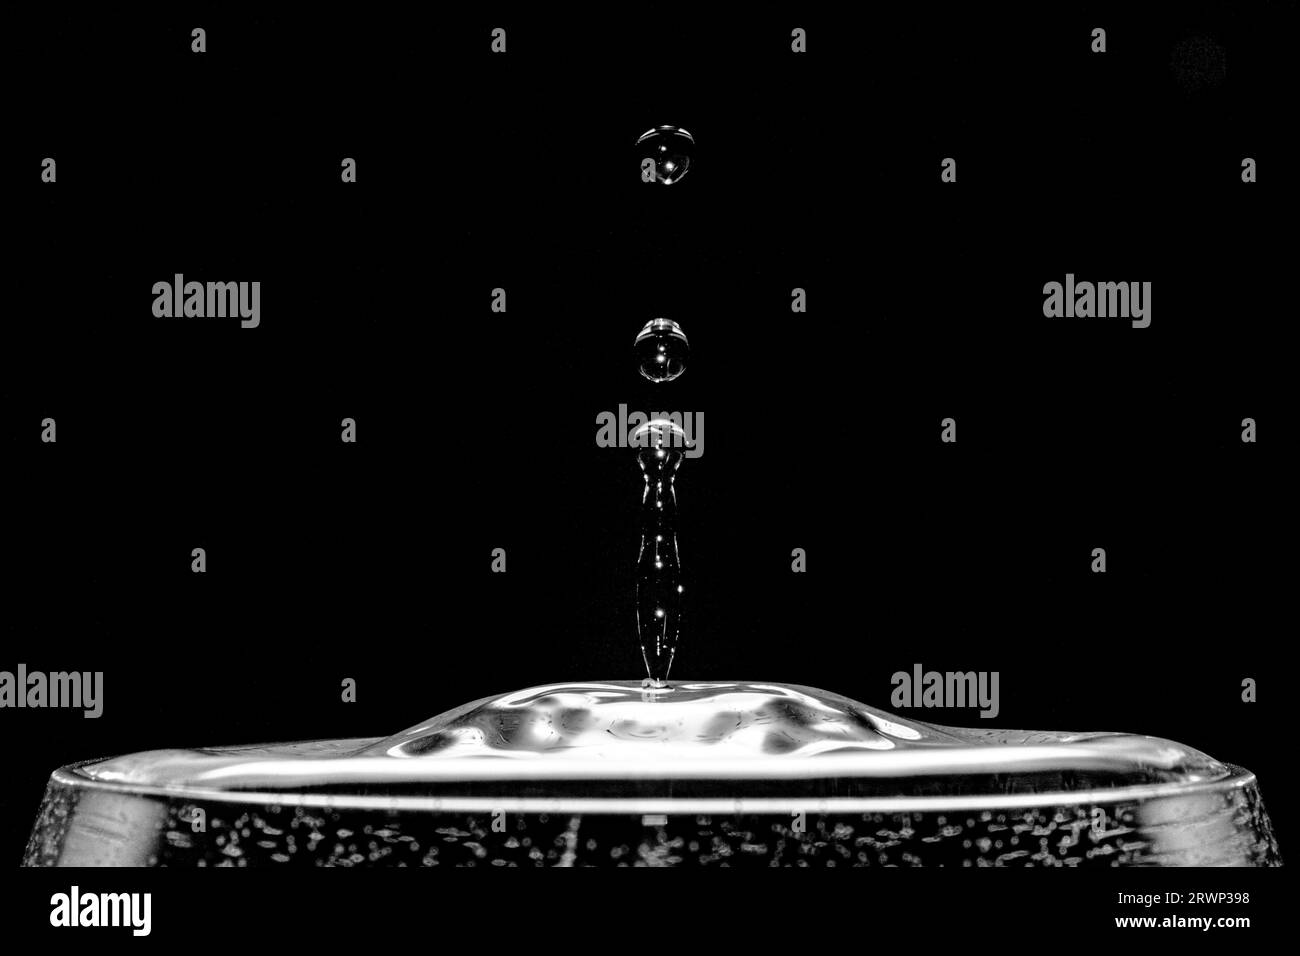 Gocce d'acqua riflettenti che emergono da un bicchiere d'acqua davanti a uno sfondo nero. Foto Stock